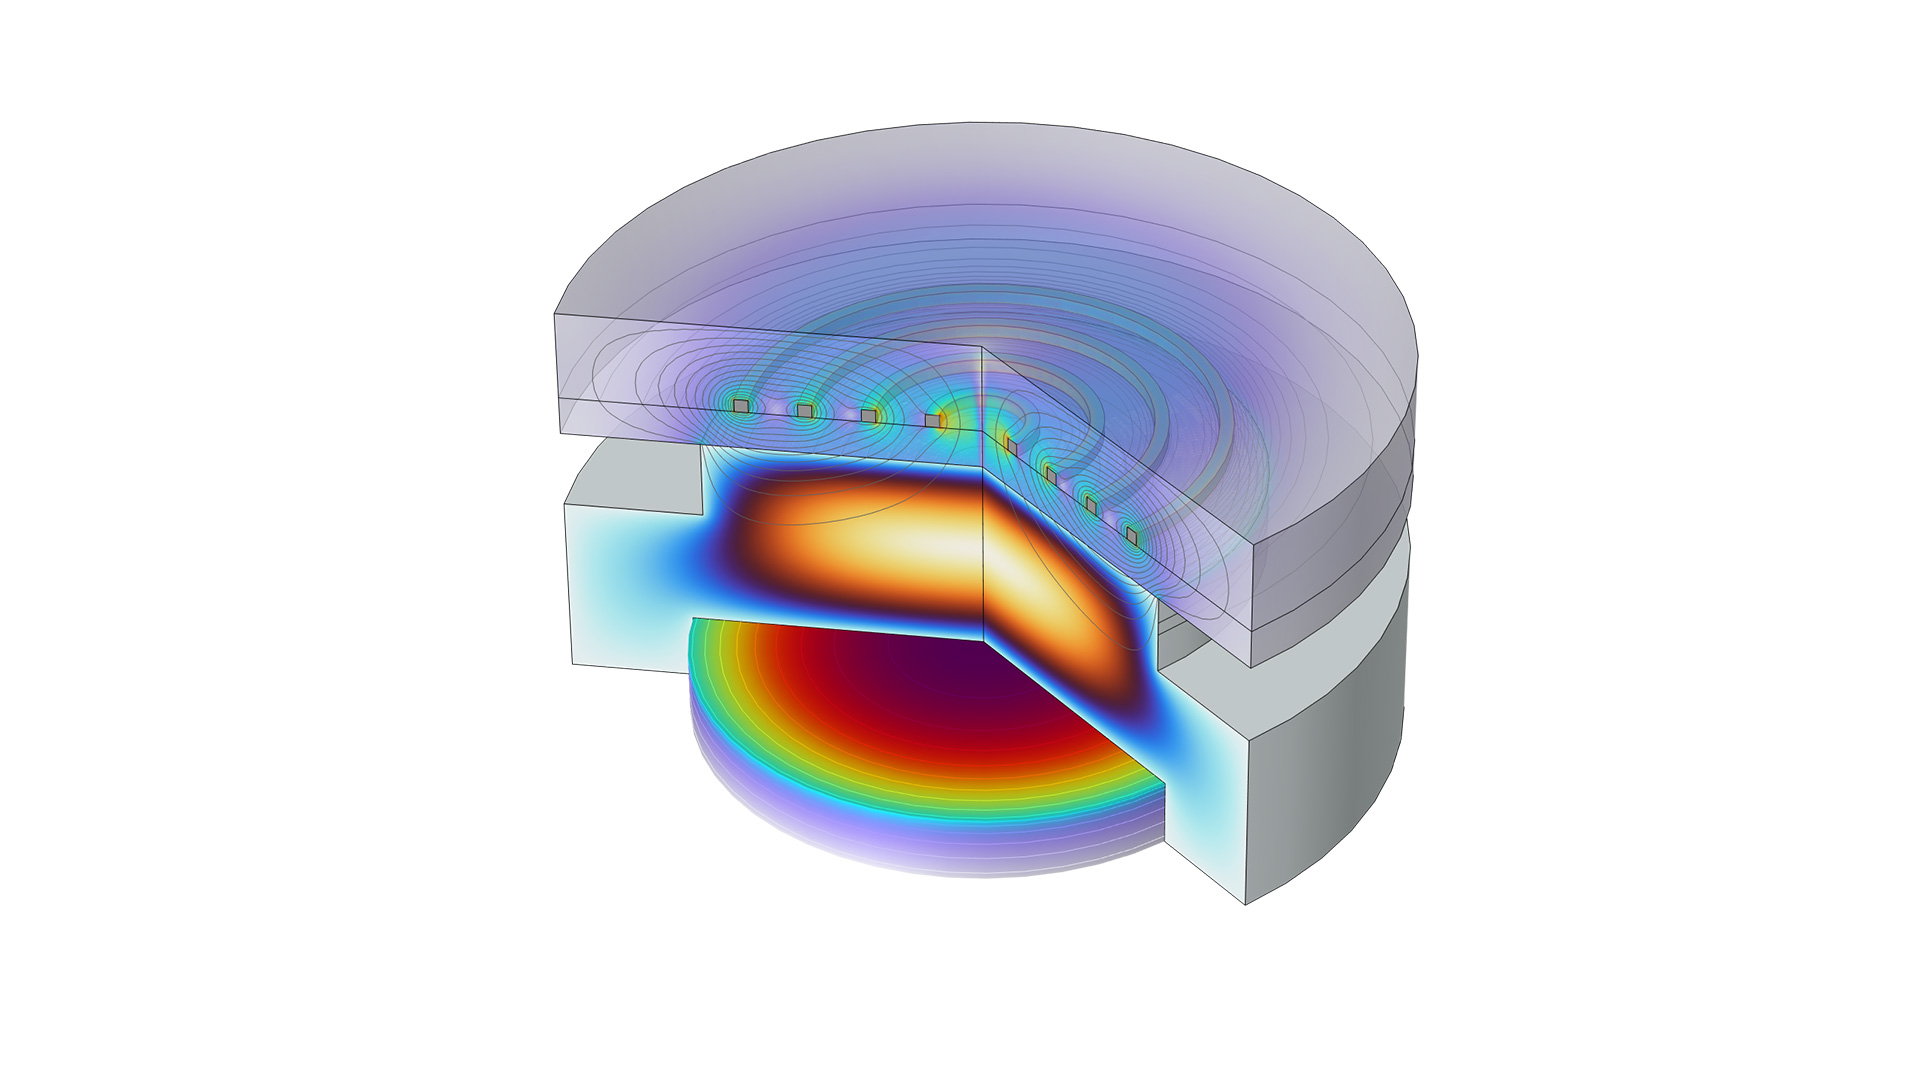 以 Thermal Wave 和 Prism 颜色表显示的反应器模型，其中显示流体流动和气体加热结果。